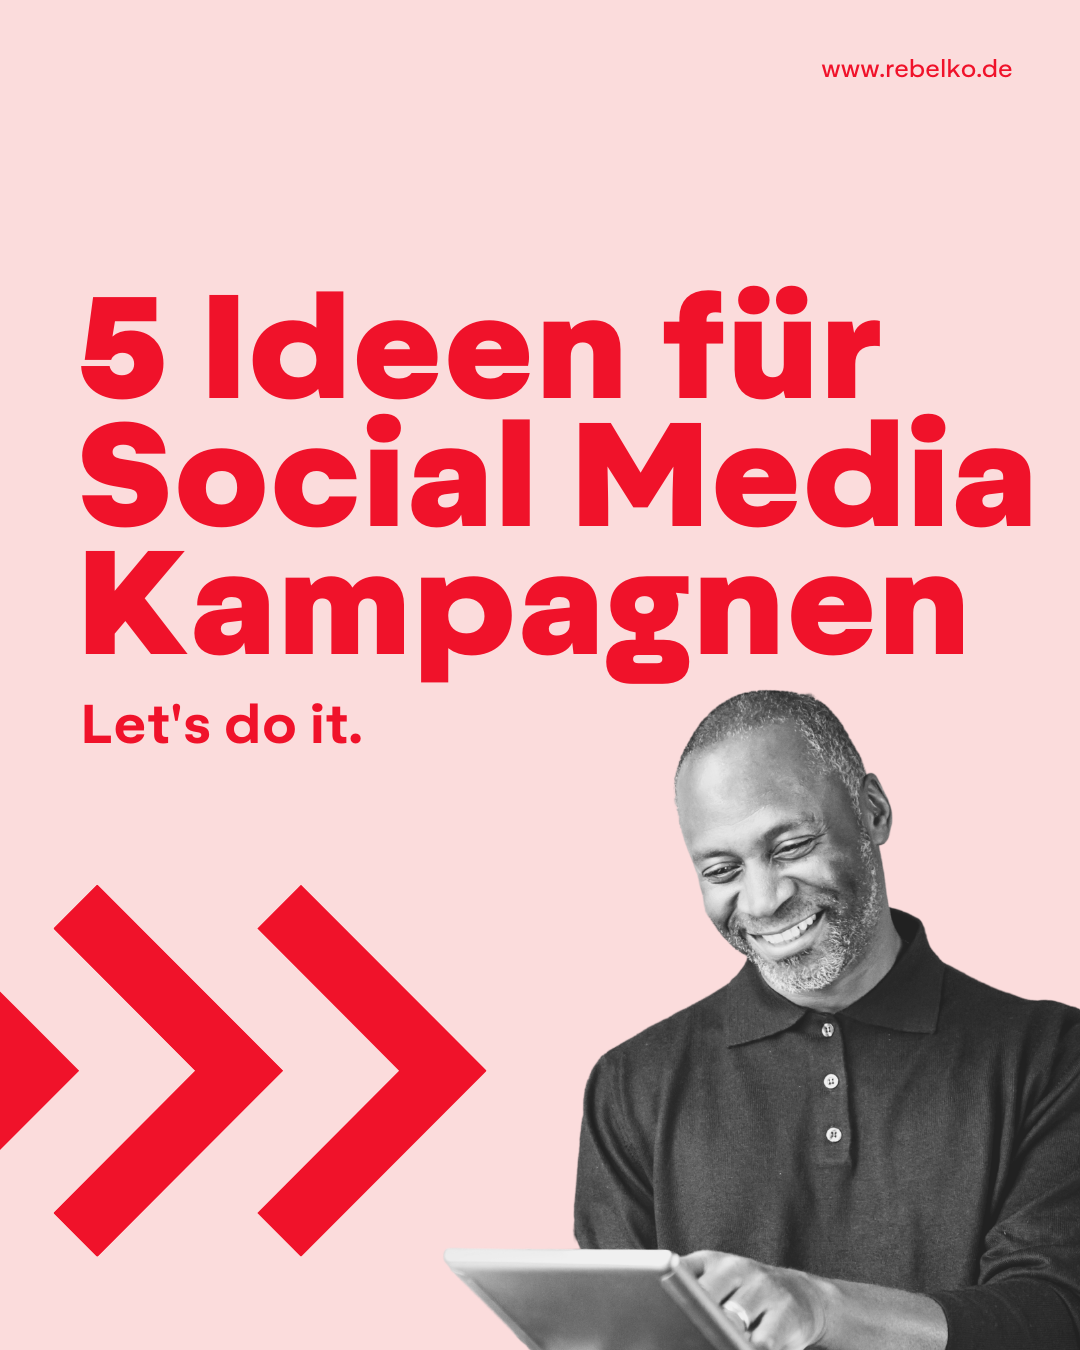 5 ideen fuer social media kampagen REBELKO Agentur Aachen Marketing  Design Kreativ Strategie Social Media Konzeption Beratung Creatives Digital 01